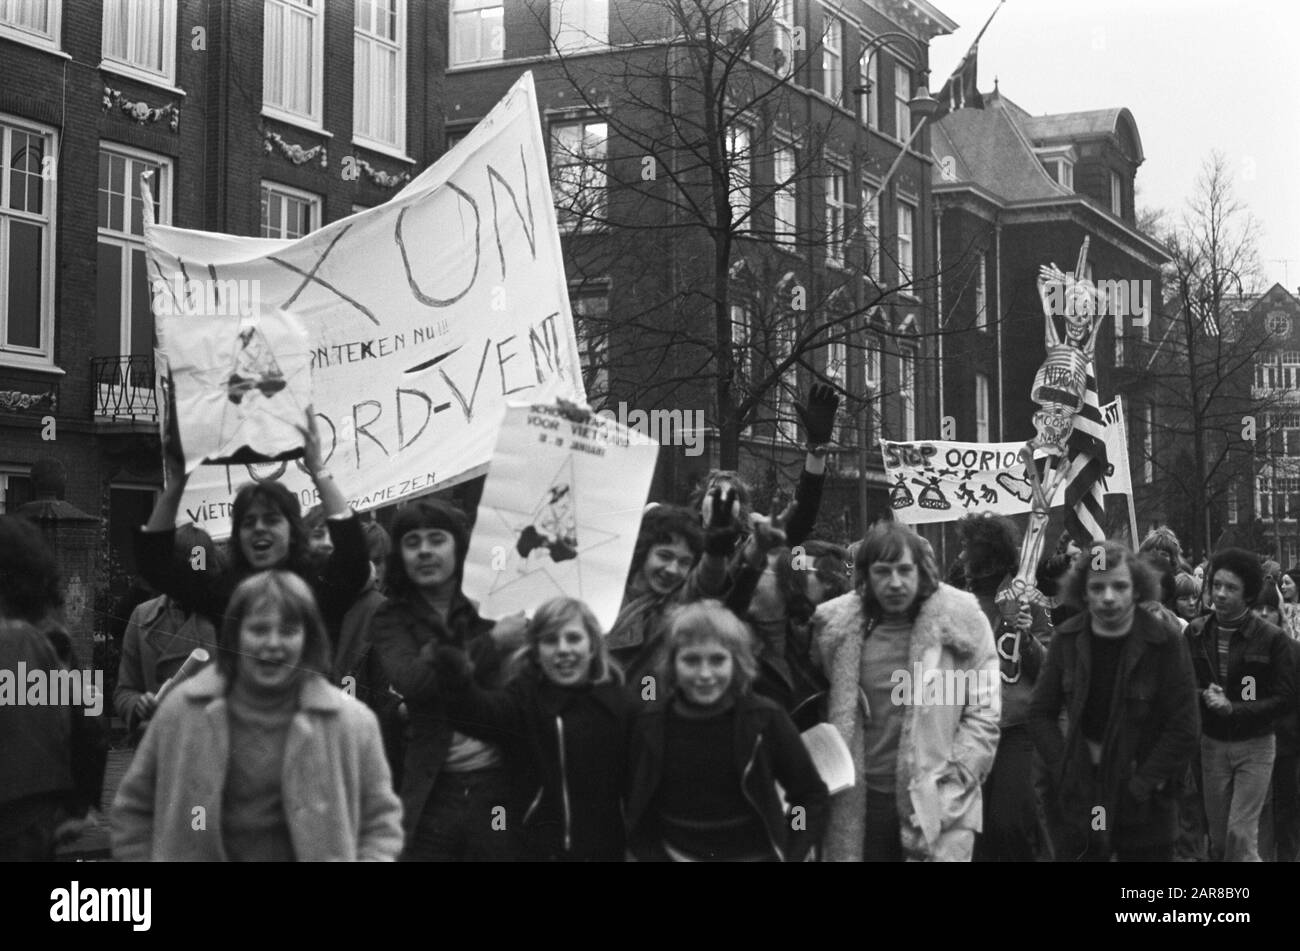 Gli studenti colpiscono ad Amsterdam per protestare contro la guerra in Vietnam, dimostrando gli studenti in viaggio verso il Consolato americano Data: 18 gennaio 1973 Località: Amsterdam, Noord-Holland Parole Chiave: Consolati, SCHOLICES, Guerre, Proteste Foto Stock